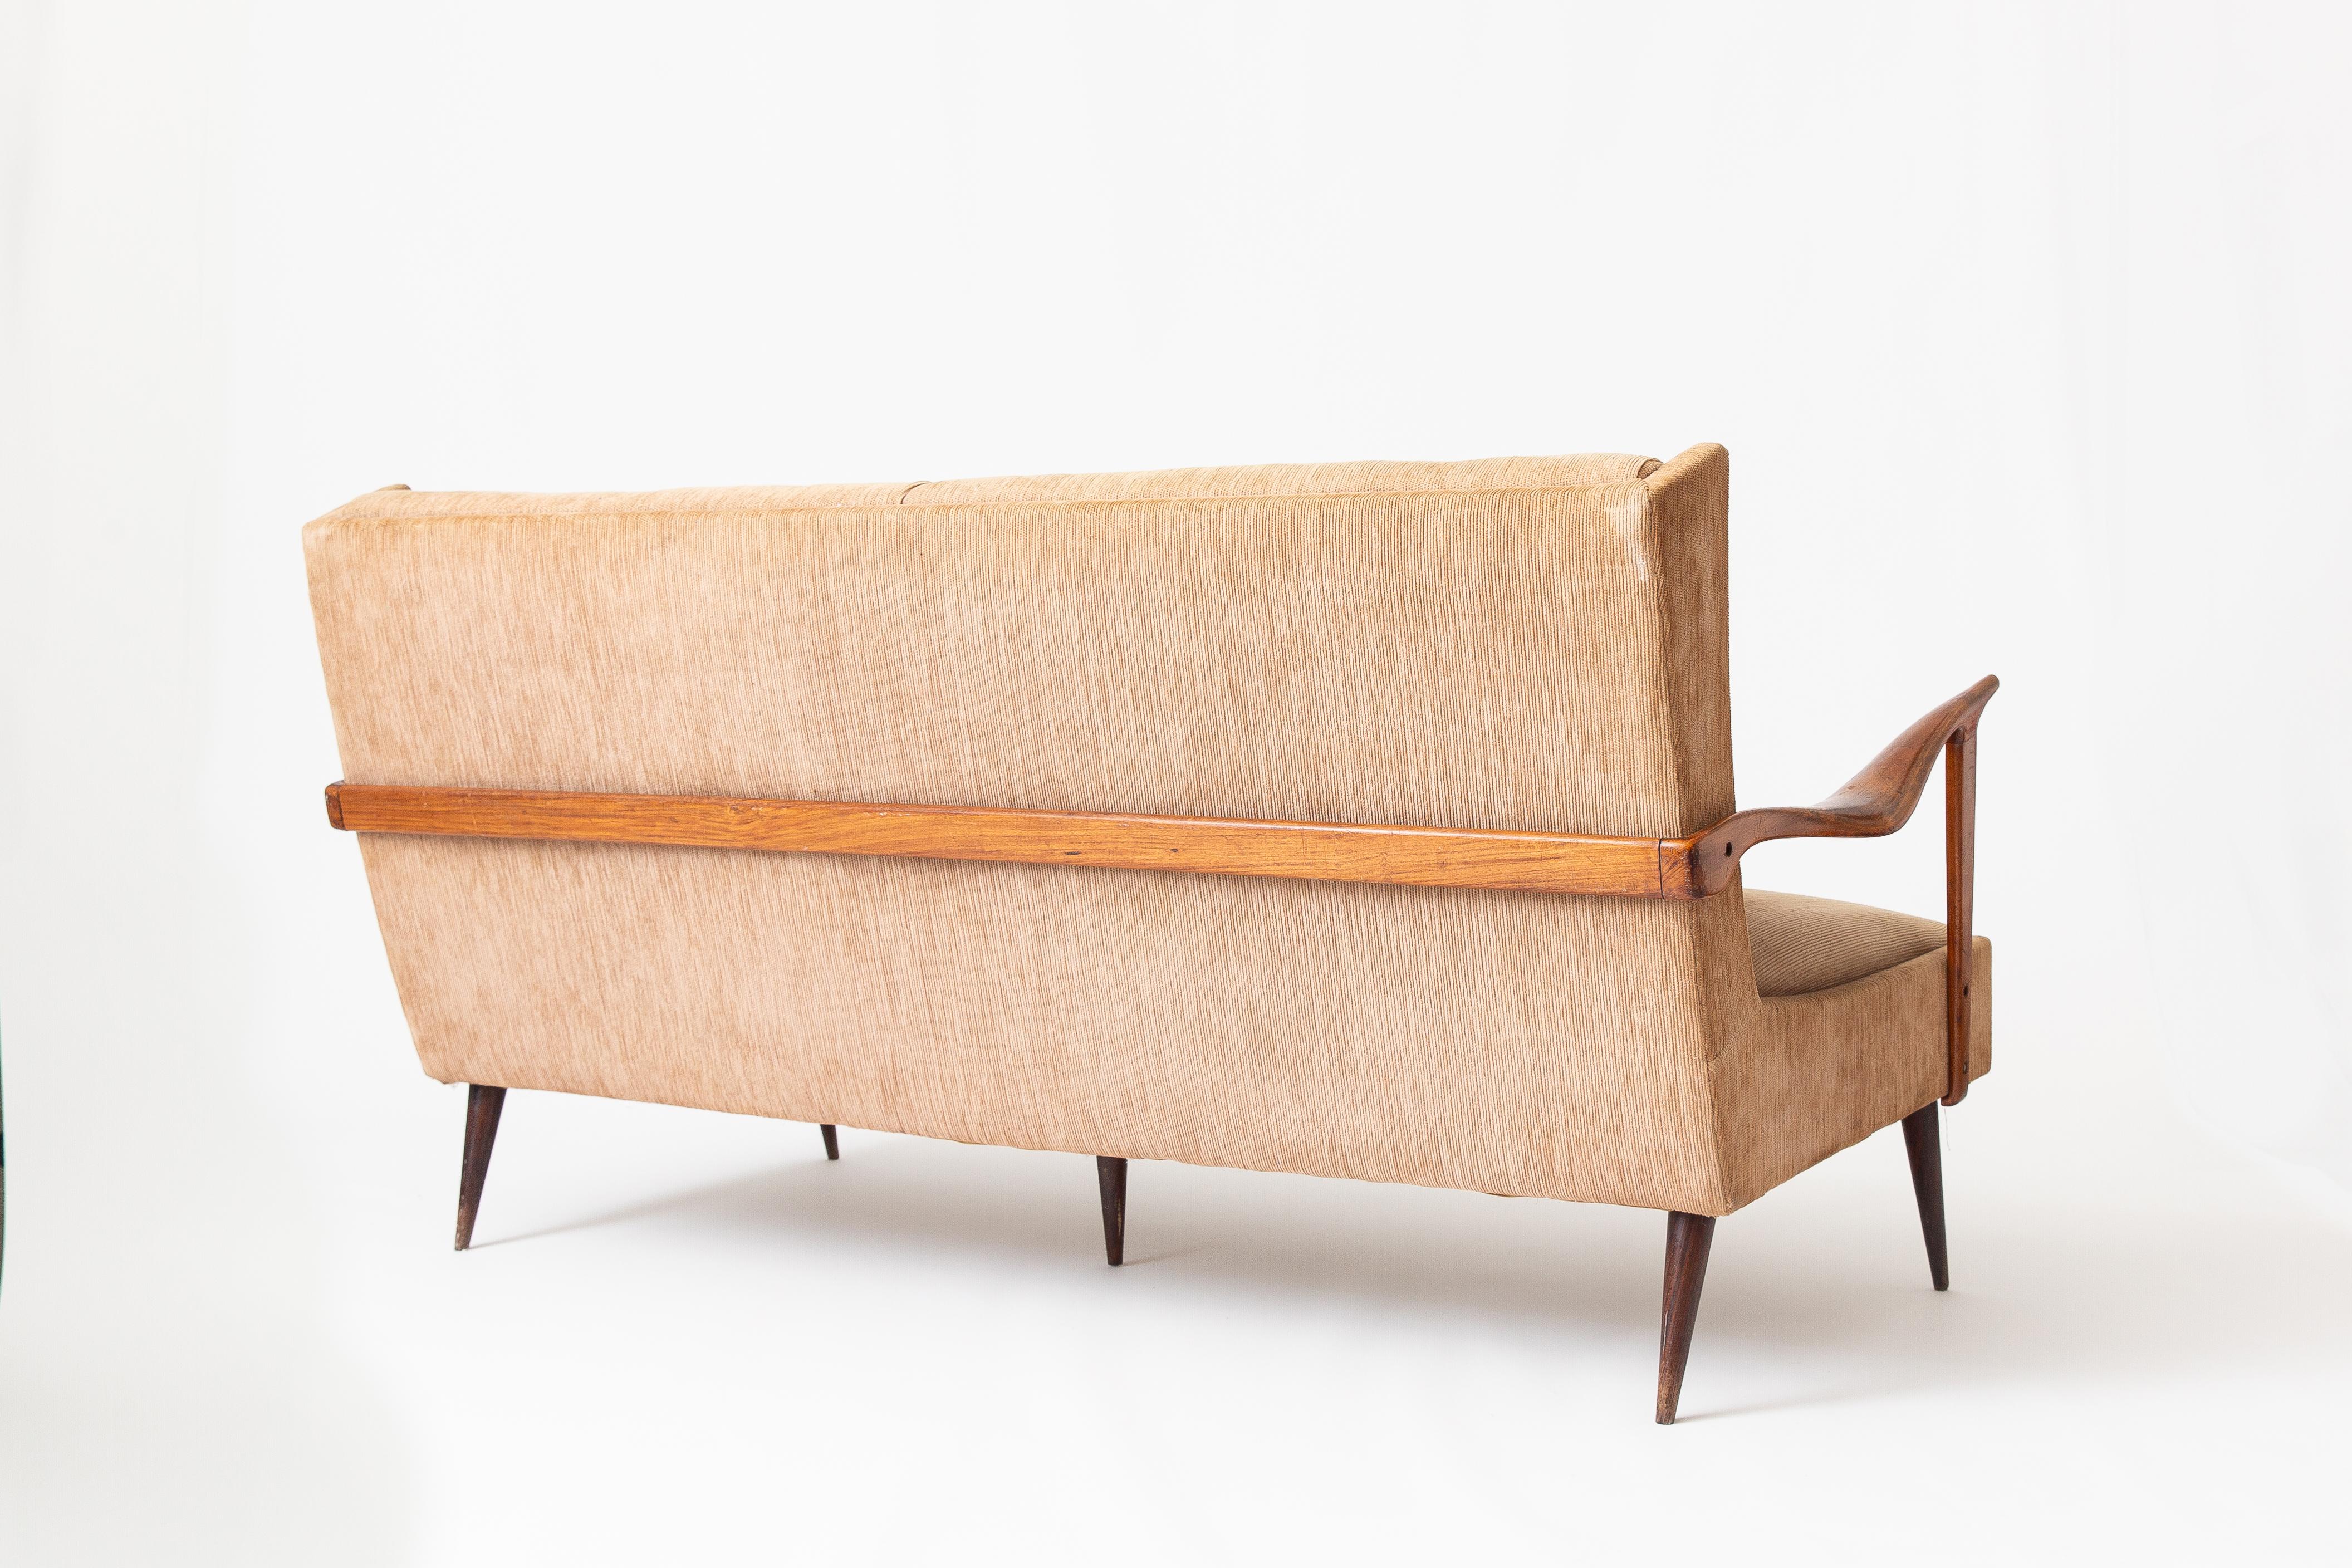 Magnifique canapé vintage de Giuseppe Scapinelli, un designer italien basé au Brésil. Connu pour ses designs uniques mêlant l'artisanat italien aux courbes et matériaux brésiliens sensuels. 

Peut être retapissé à la demande du client en tant que